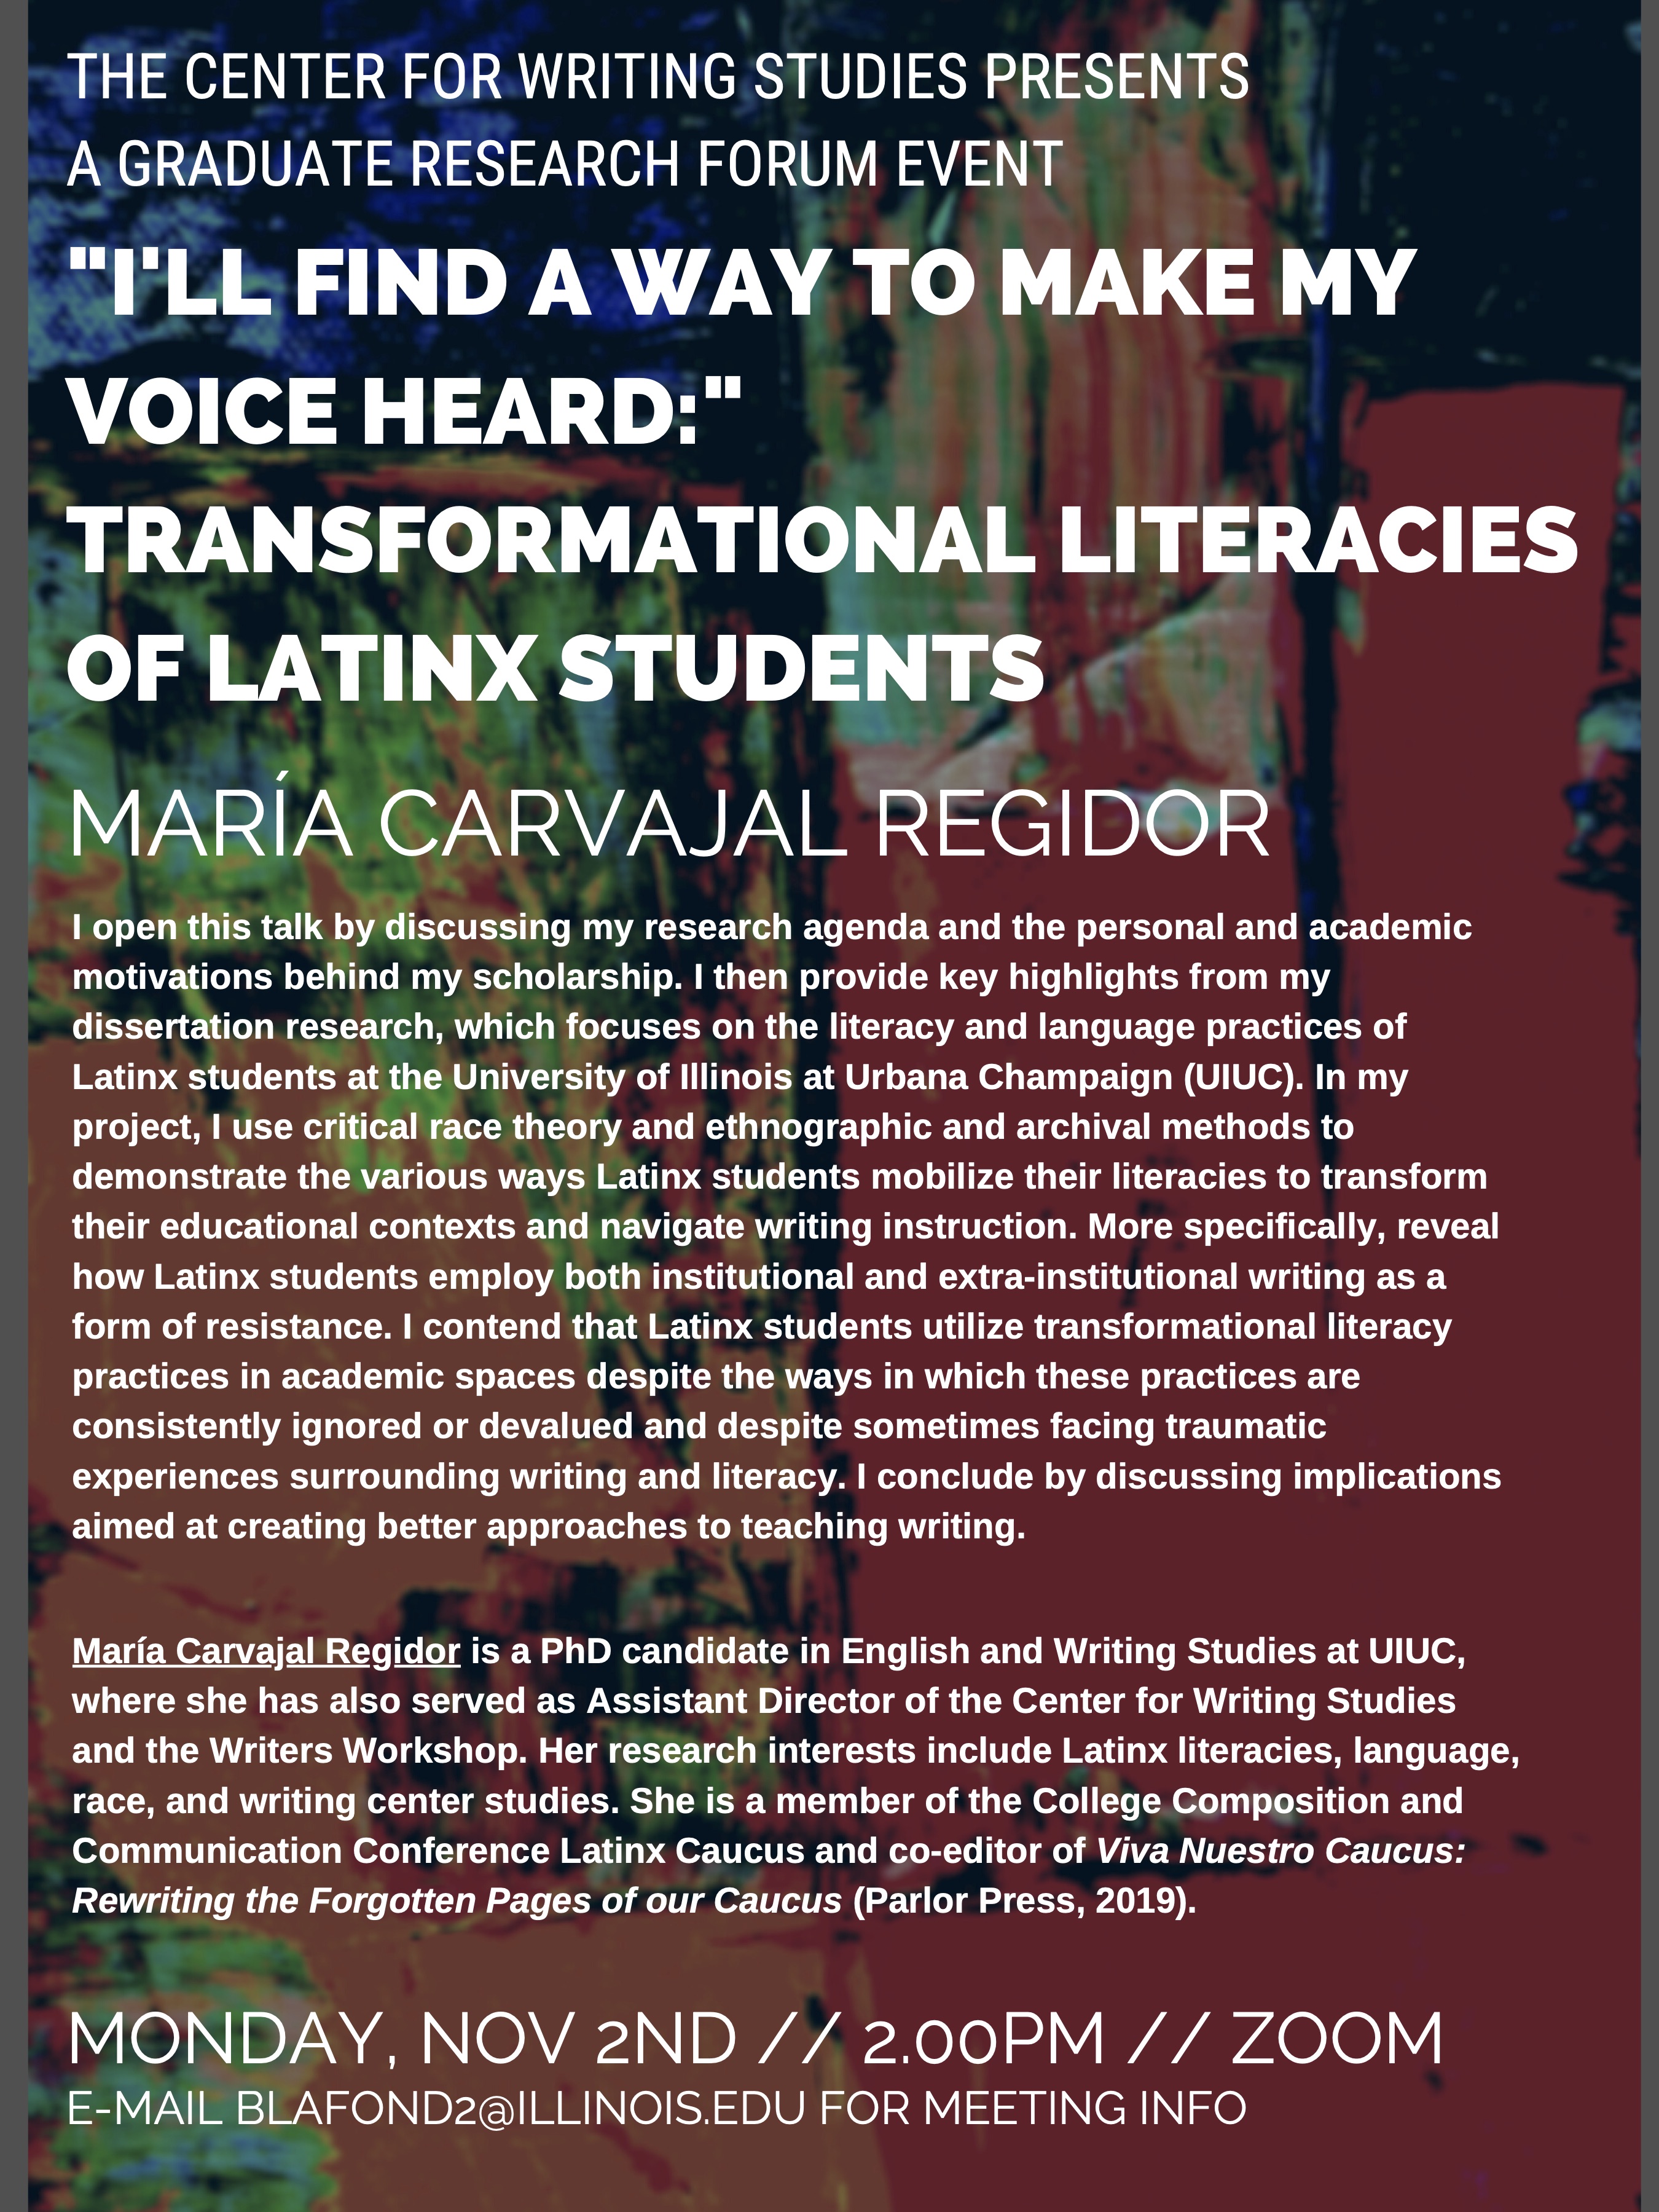 A flyer for María Carvajal Regidor's presentation